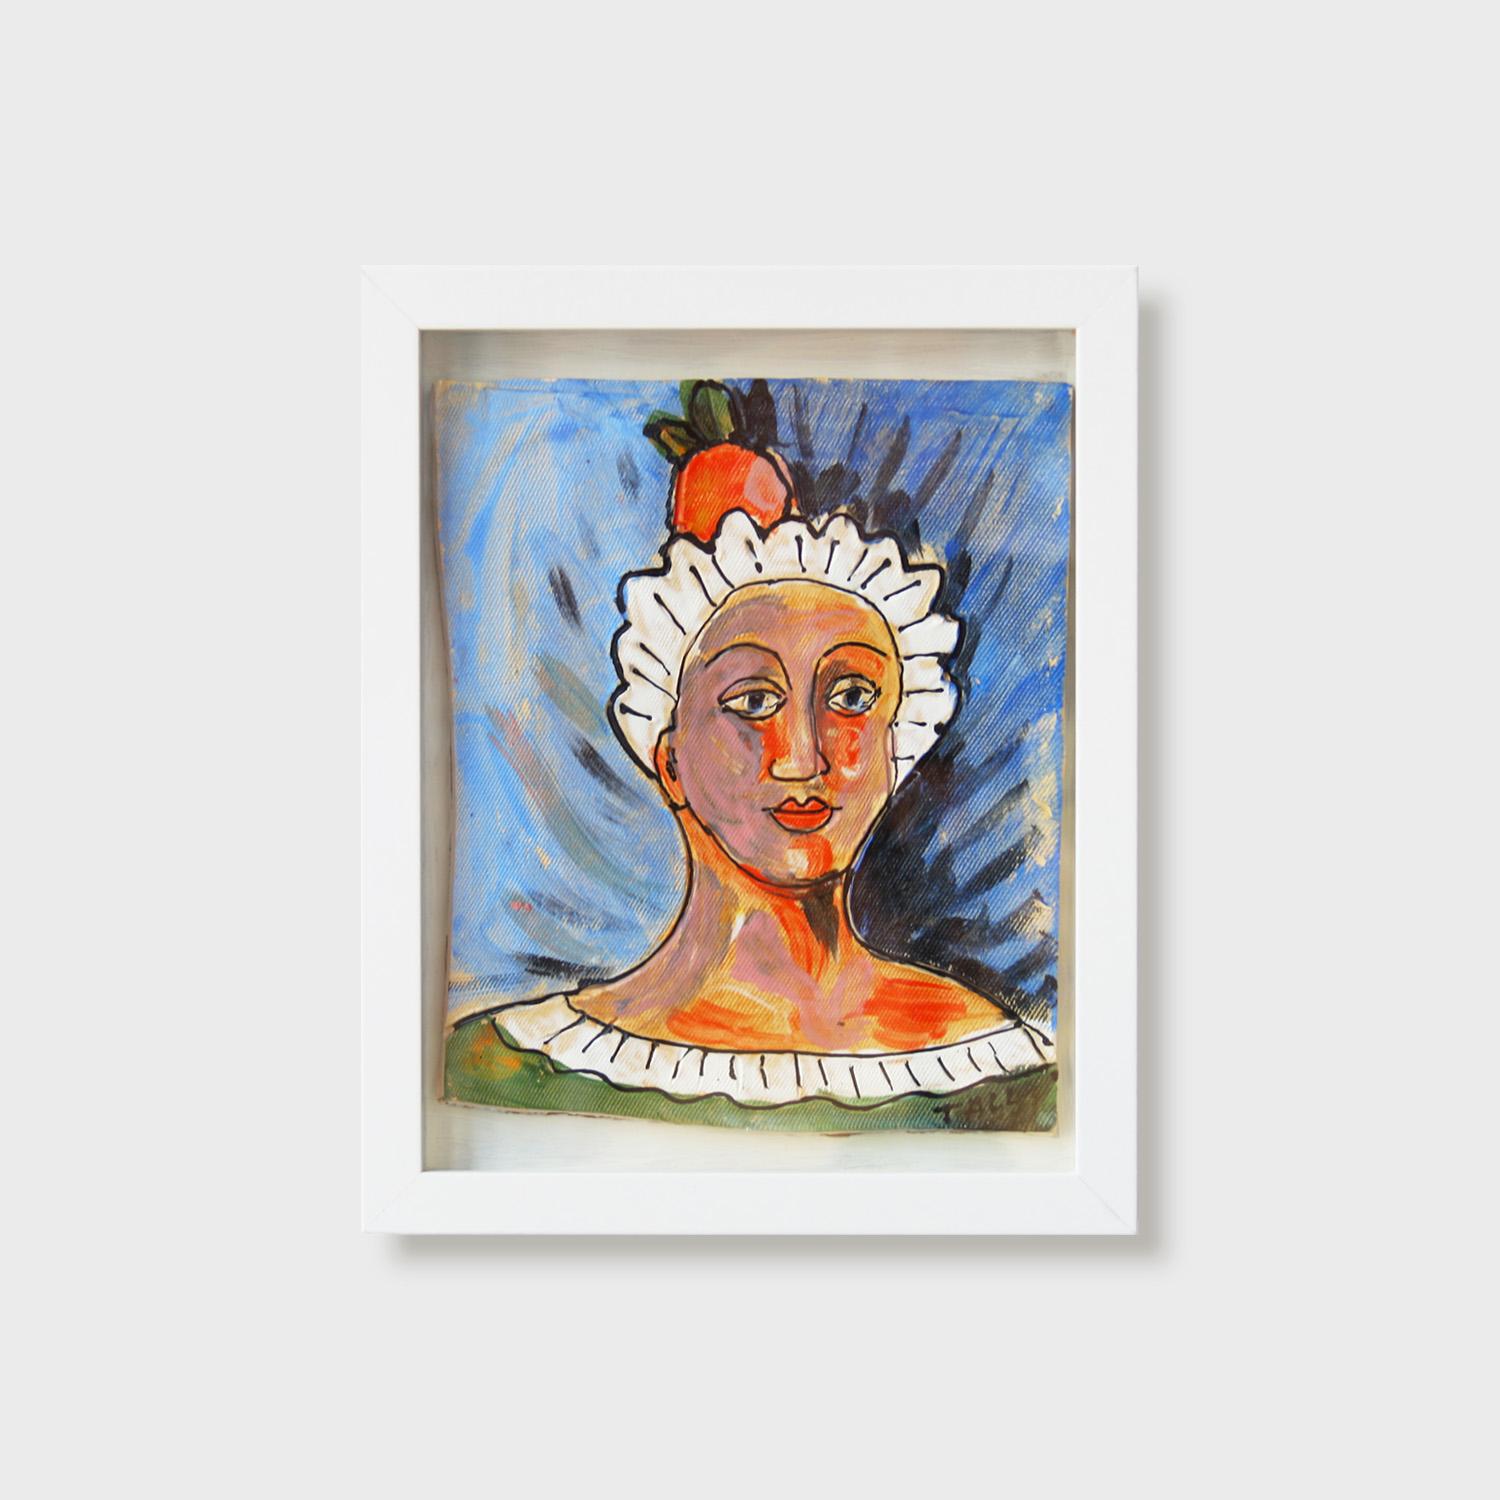 Surrealistisches Gemälde auf Kacheln, „Tangerine Zinger“ (Surrealismus), Mixed Media Art, von Cheryl Tall